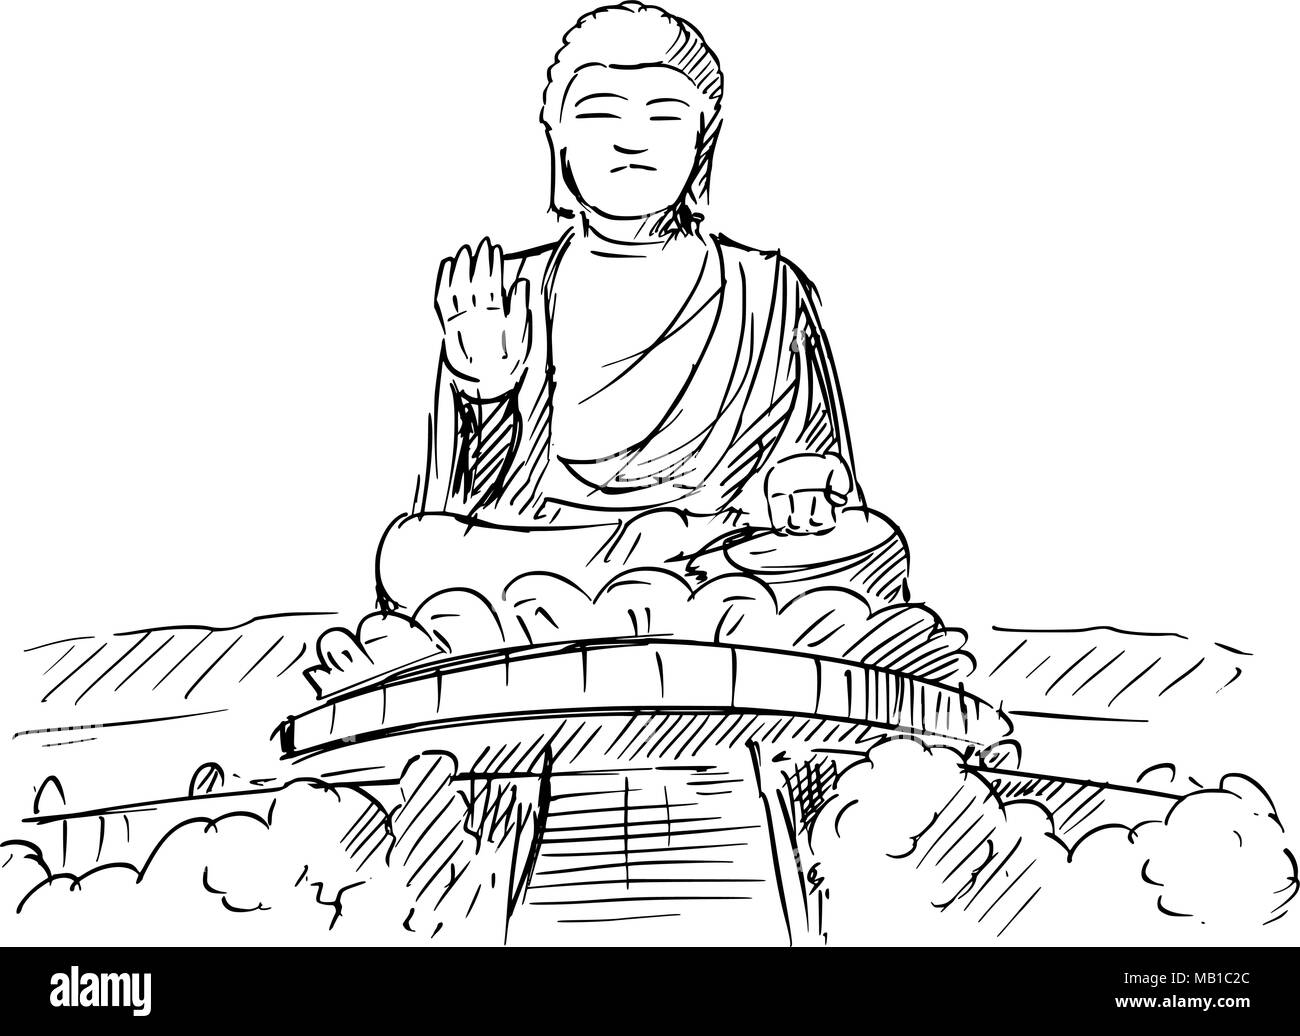 Croquis dessin animé du Tian Tan ou statue du Grand Bouddha, Hong Kong Illustration de Vecteur